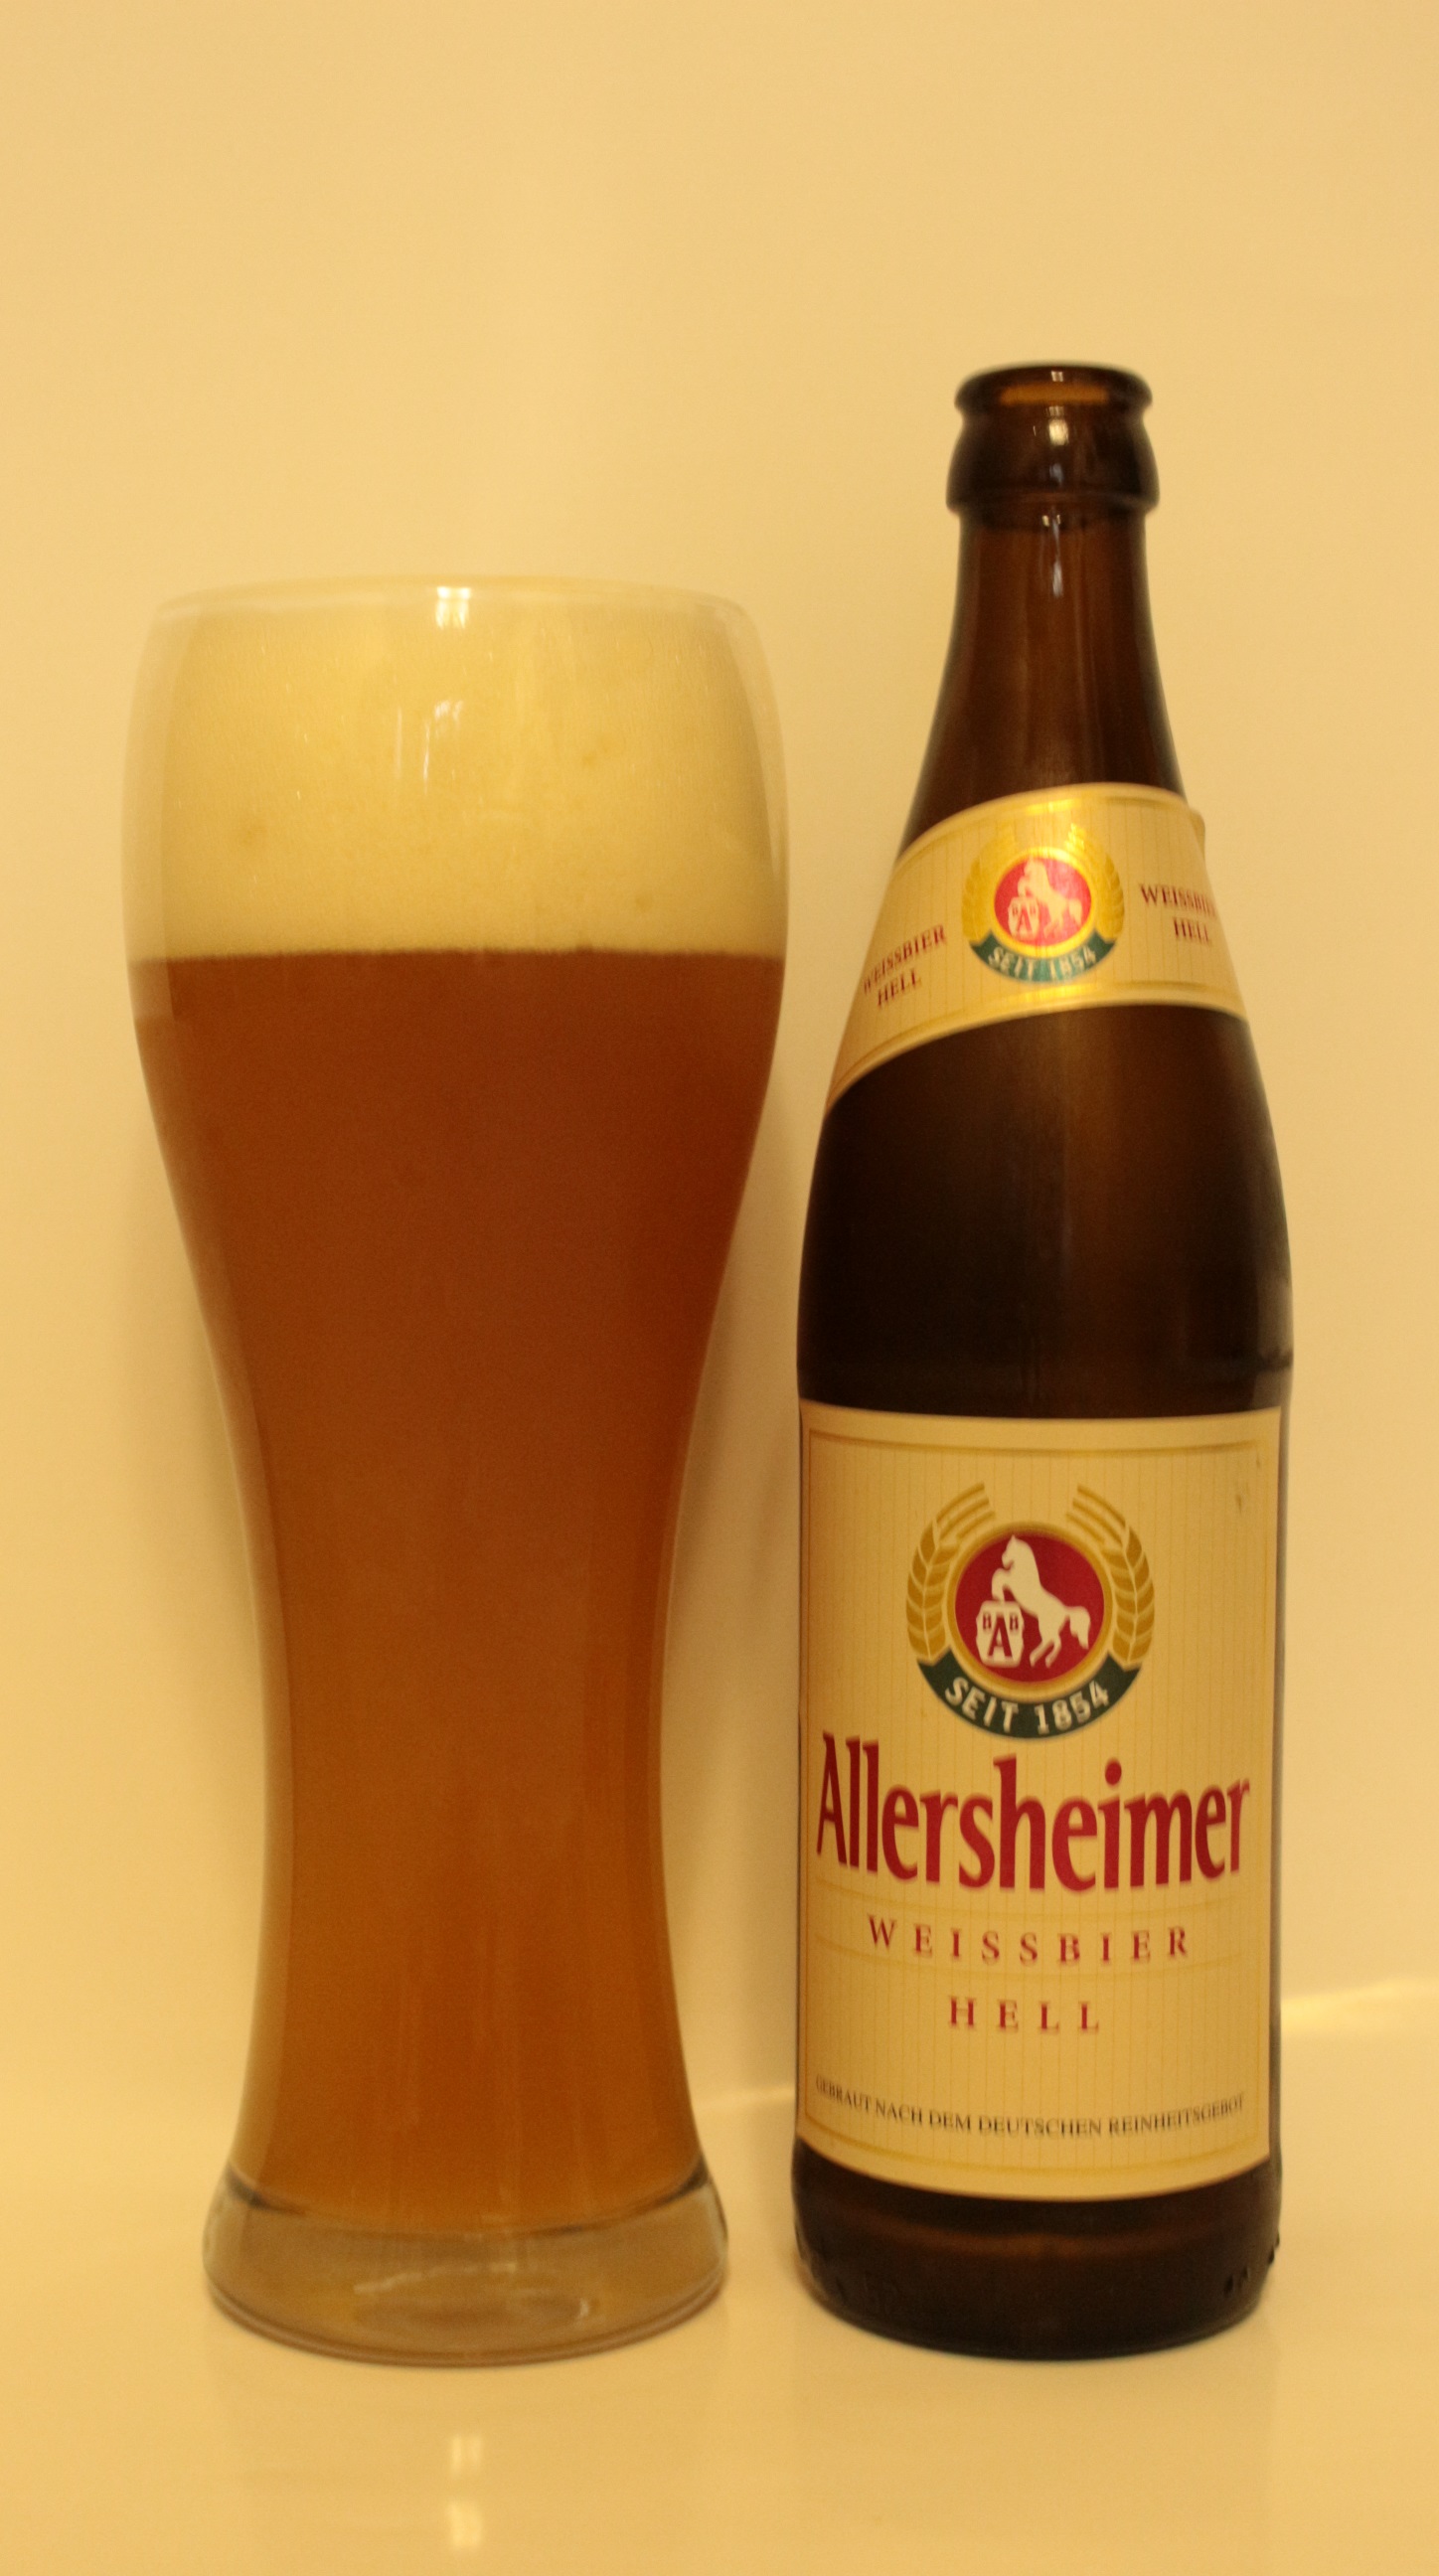 BrauereiAllersheimGmbH,Allersheimer,Weissbier